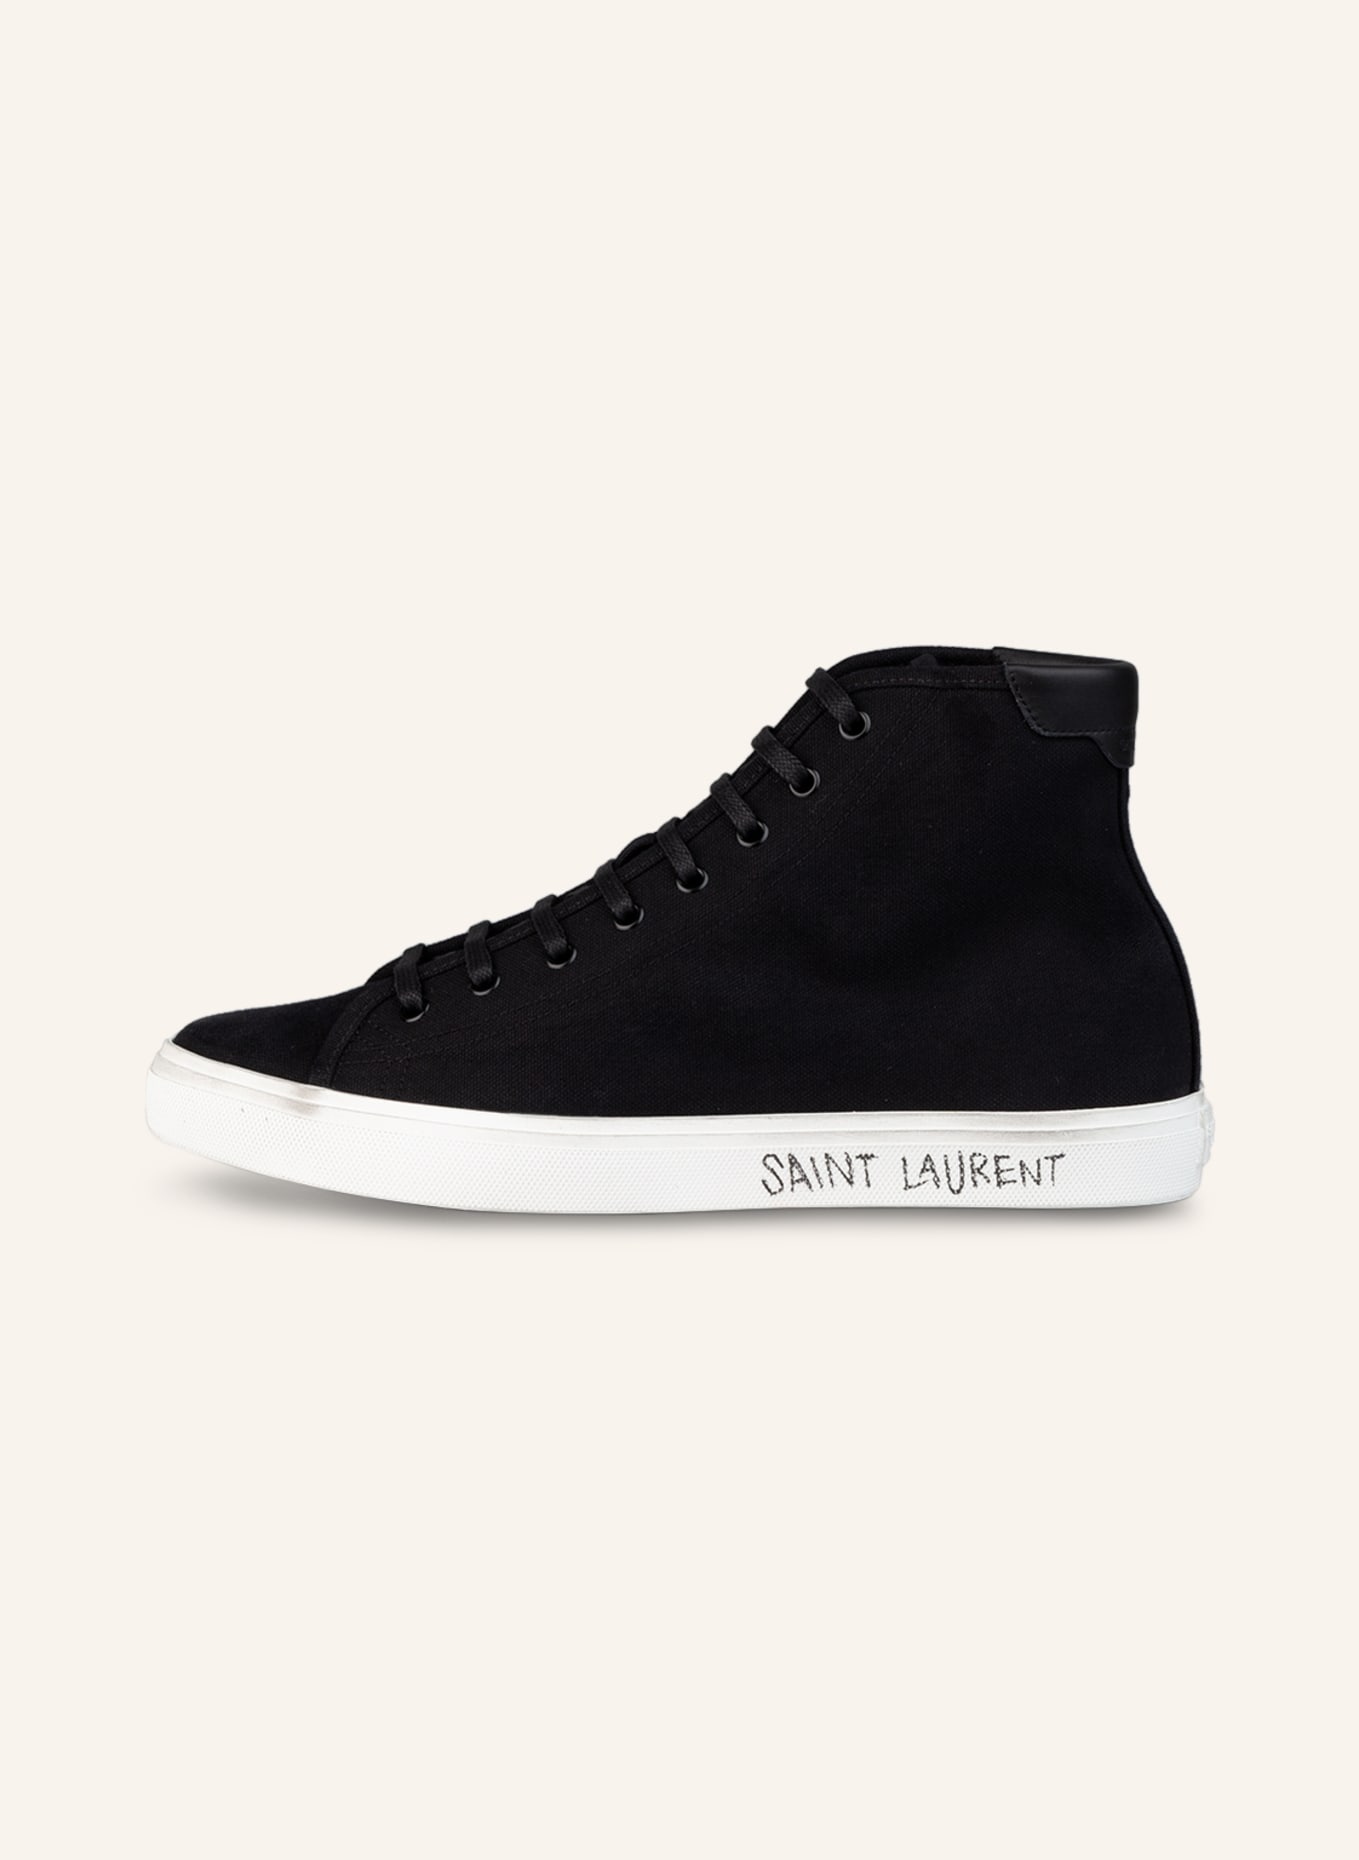 SAINT LAURENT Hightop-Sneaker MALIBU, Farbe: SCHWARZ (Bild 4)